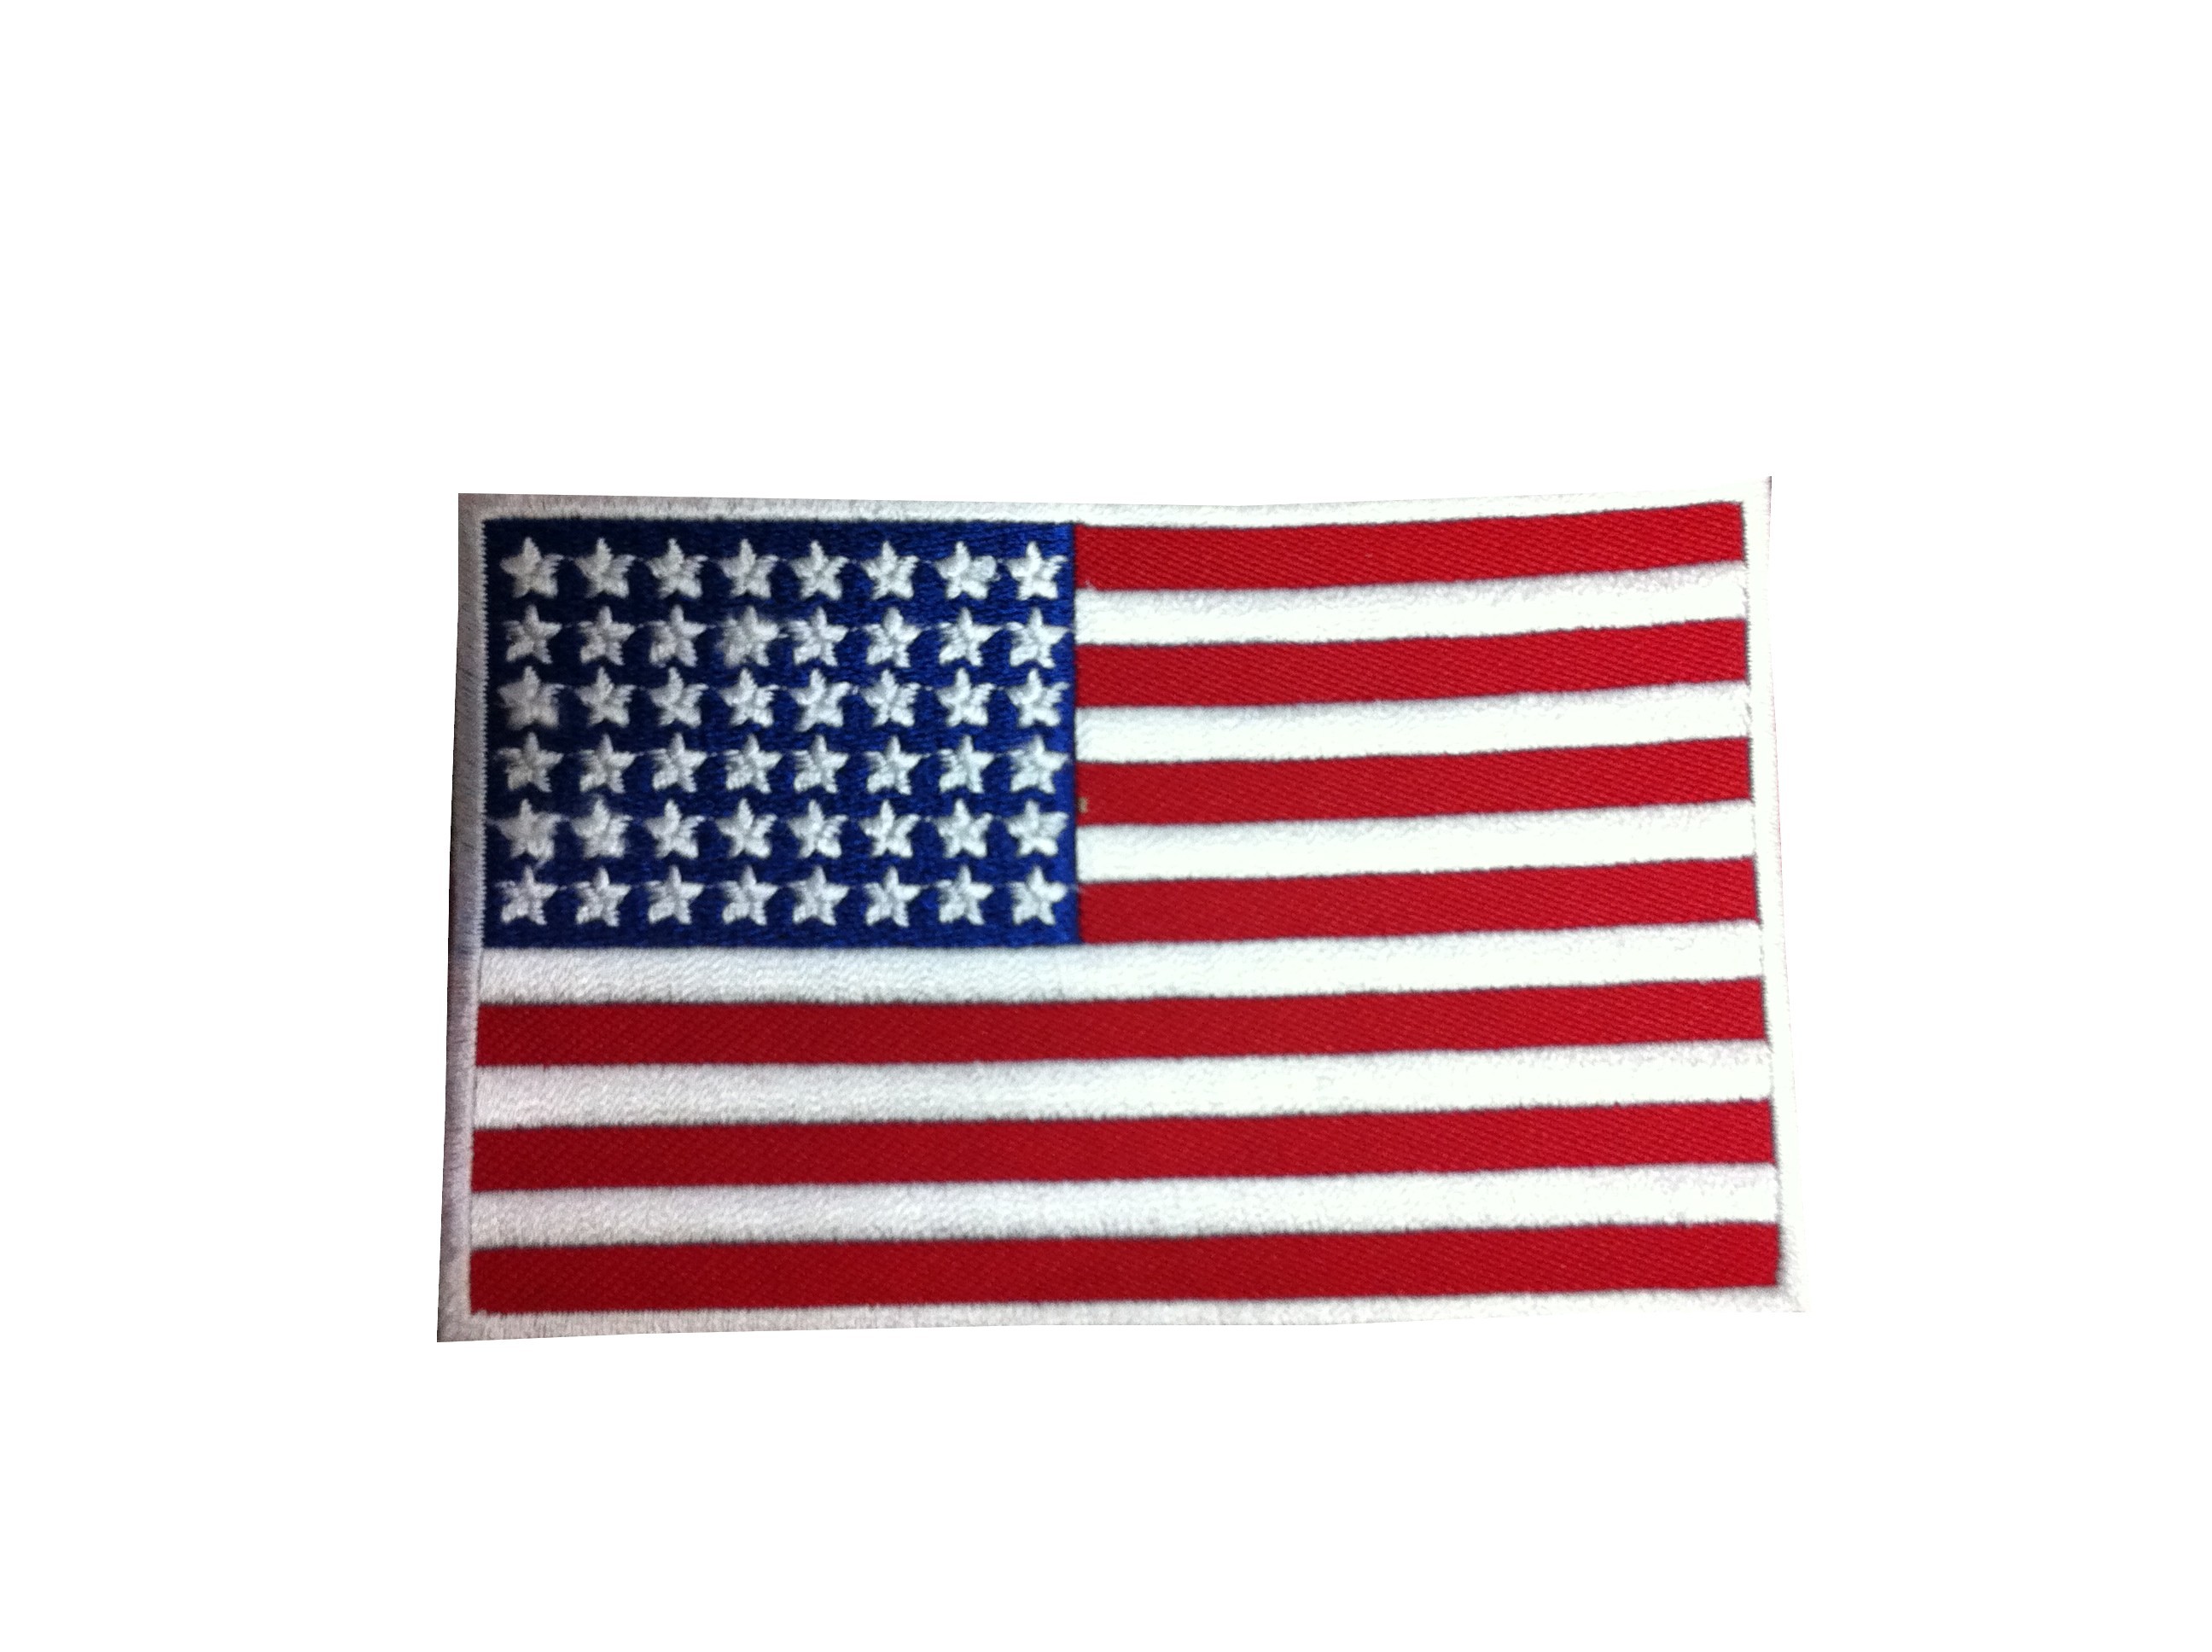 Porte cle cles clef brode patch ecusson badge drapeau usa americain etats unis